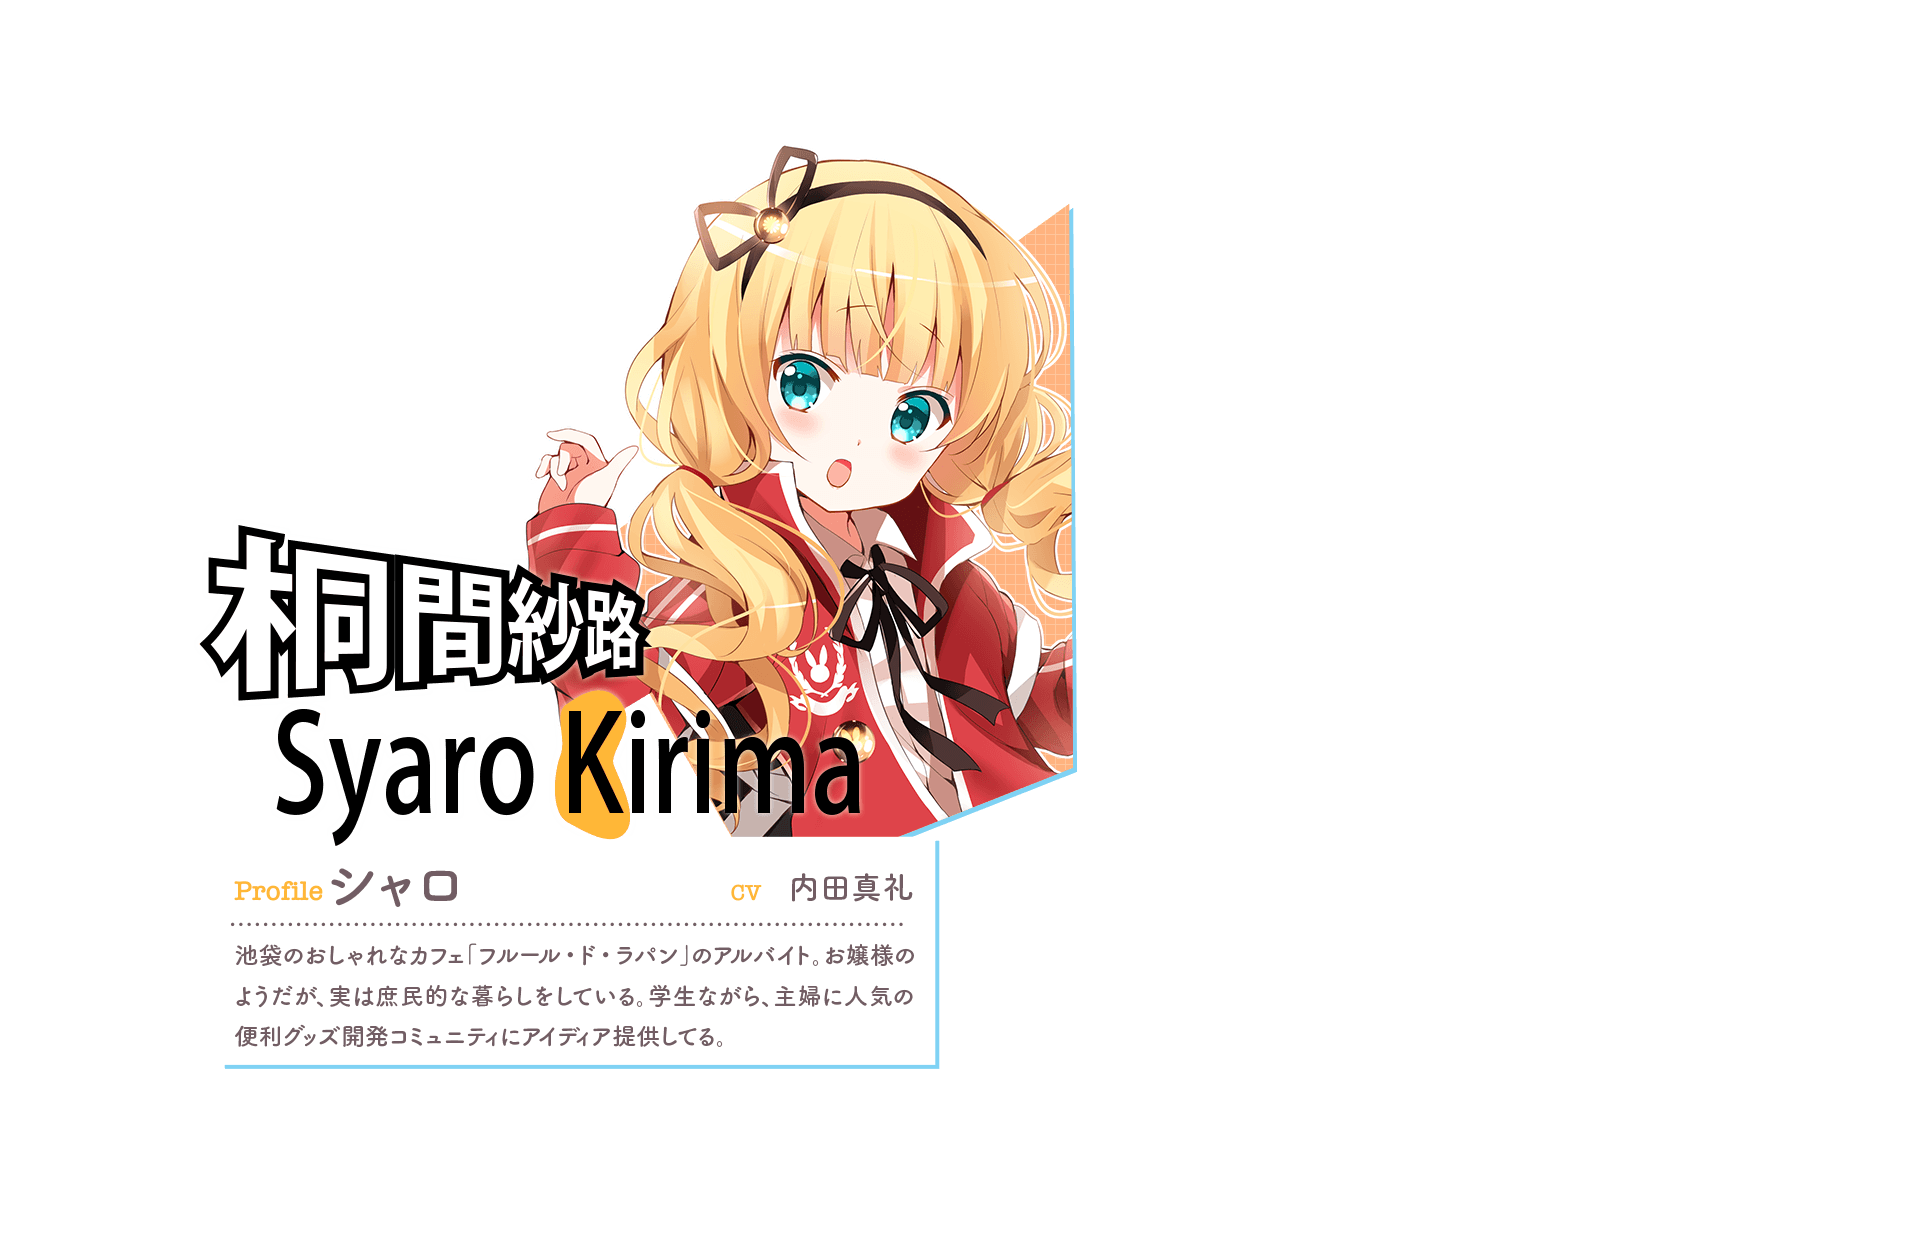 『桐間紗路 Syaro Kirima [k(黄色)]』　Profile:シャロ　CV:内田真礼　池袋のおしゃれなカフェ「フルール・ド・ラパン」のアルバイト。お嬢様のようだが、実は庶民的な暮らしをしている。学生ながら、主婦に人気の便利グッズ開発コミュニティにアイディア提供してる。　「よし！これで私の残高５２万円！」